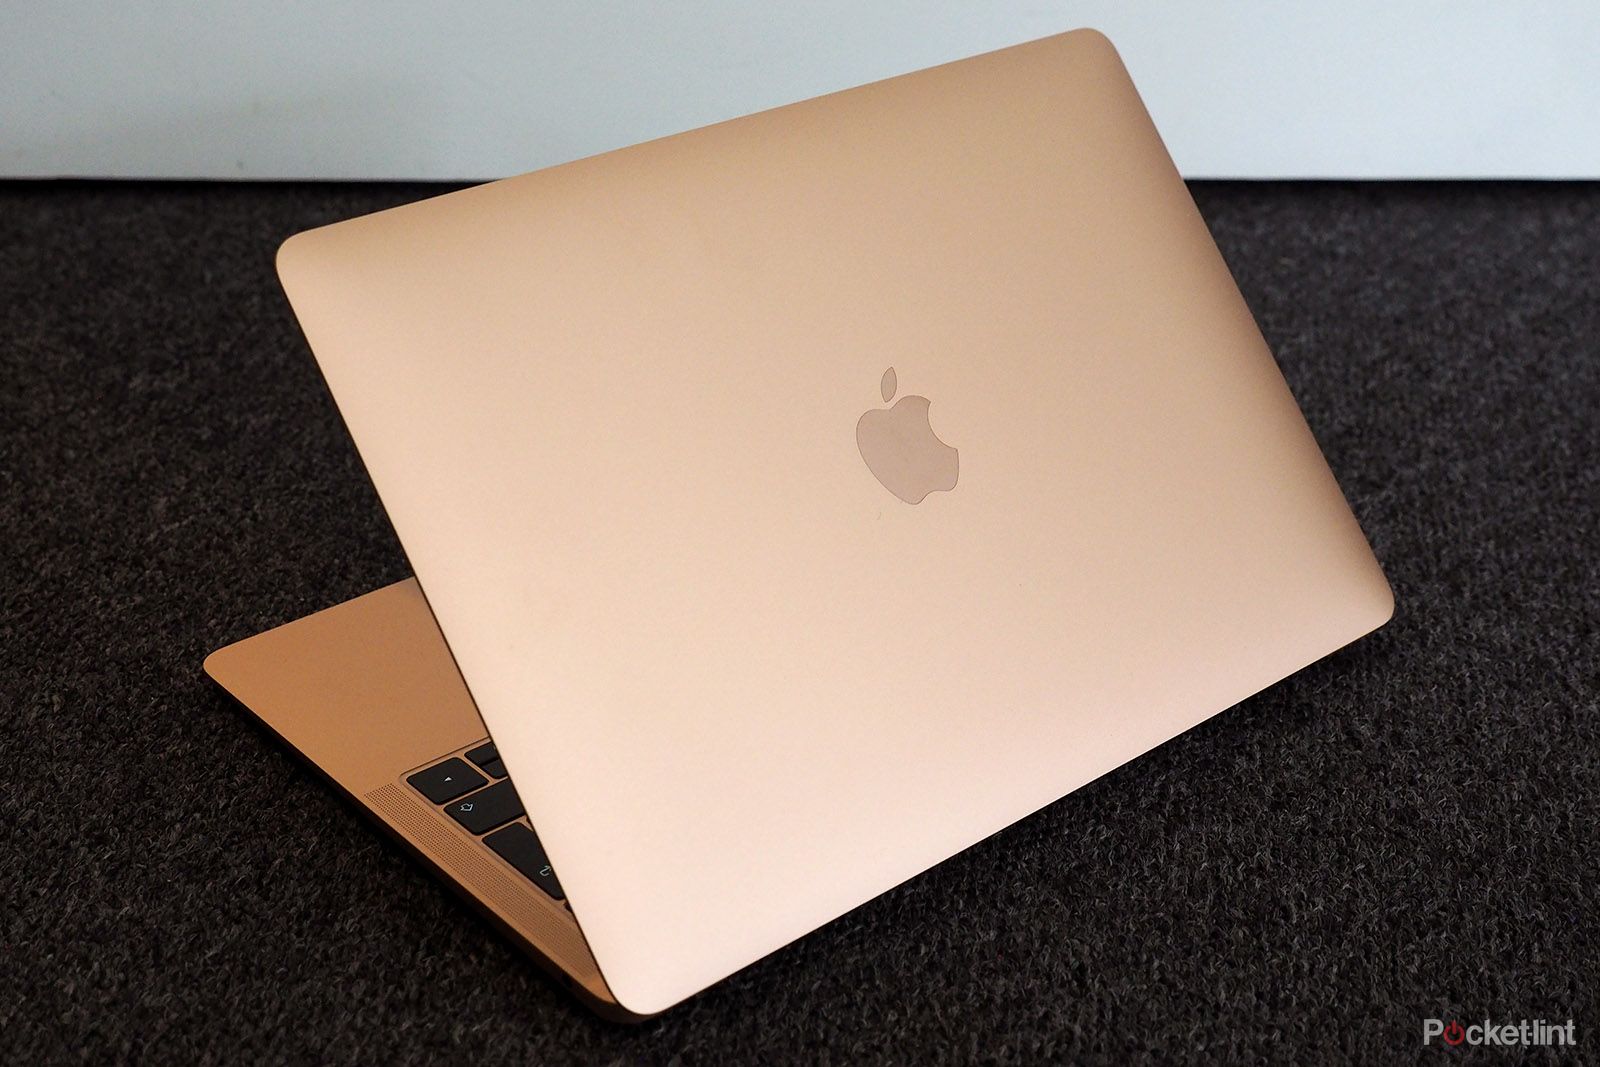 Apple MacBook Air 2019 review image 3